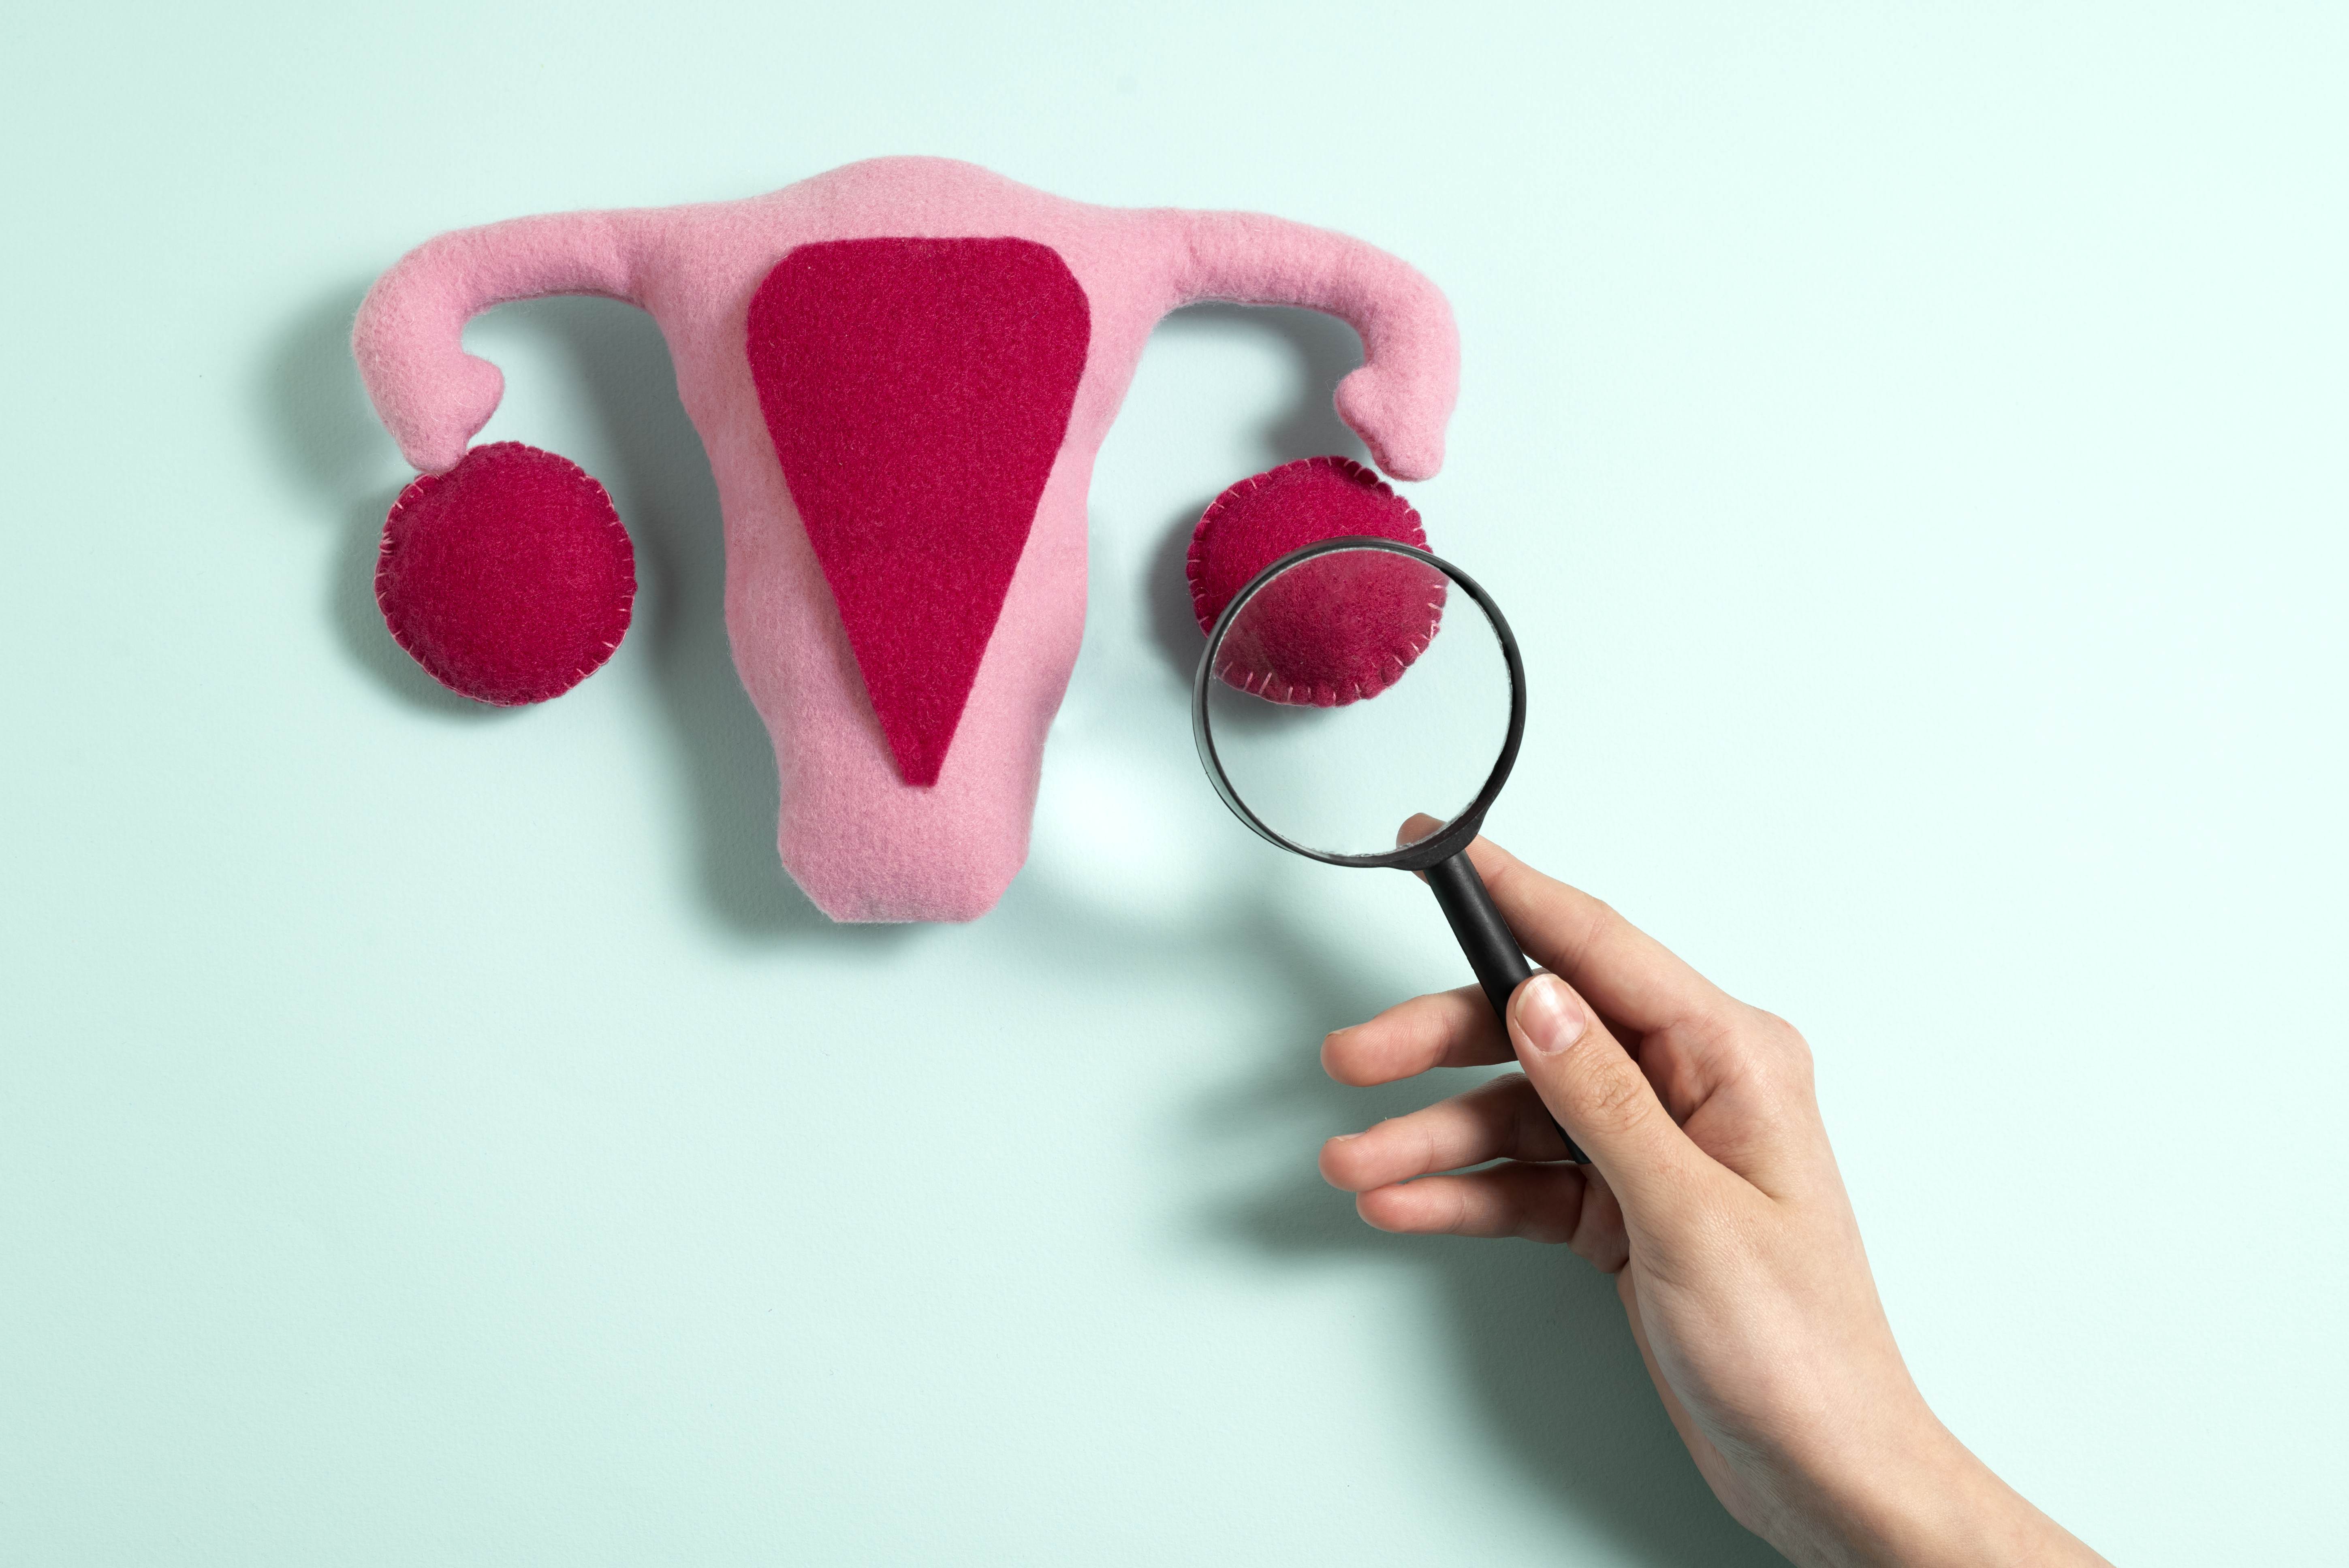 Misinformation and stigma mar efforts to eliminate cervical cancer